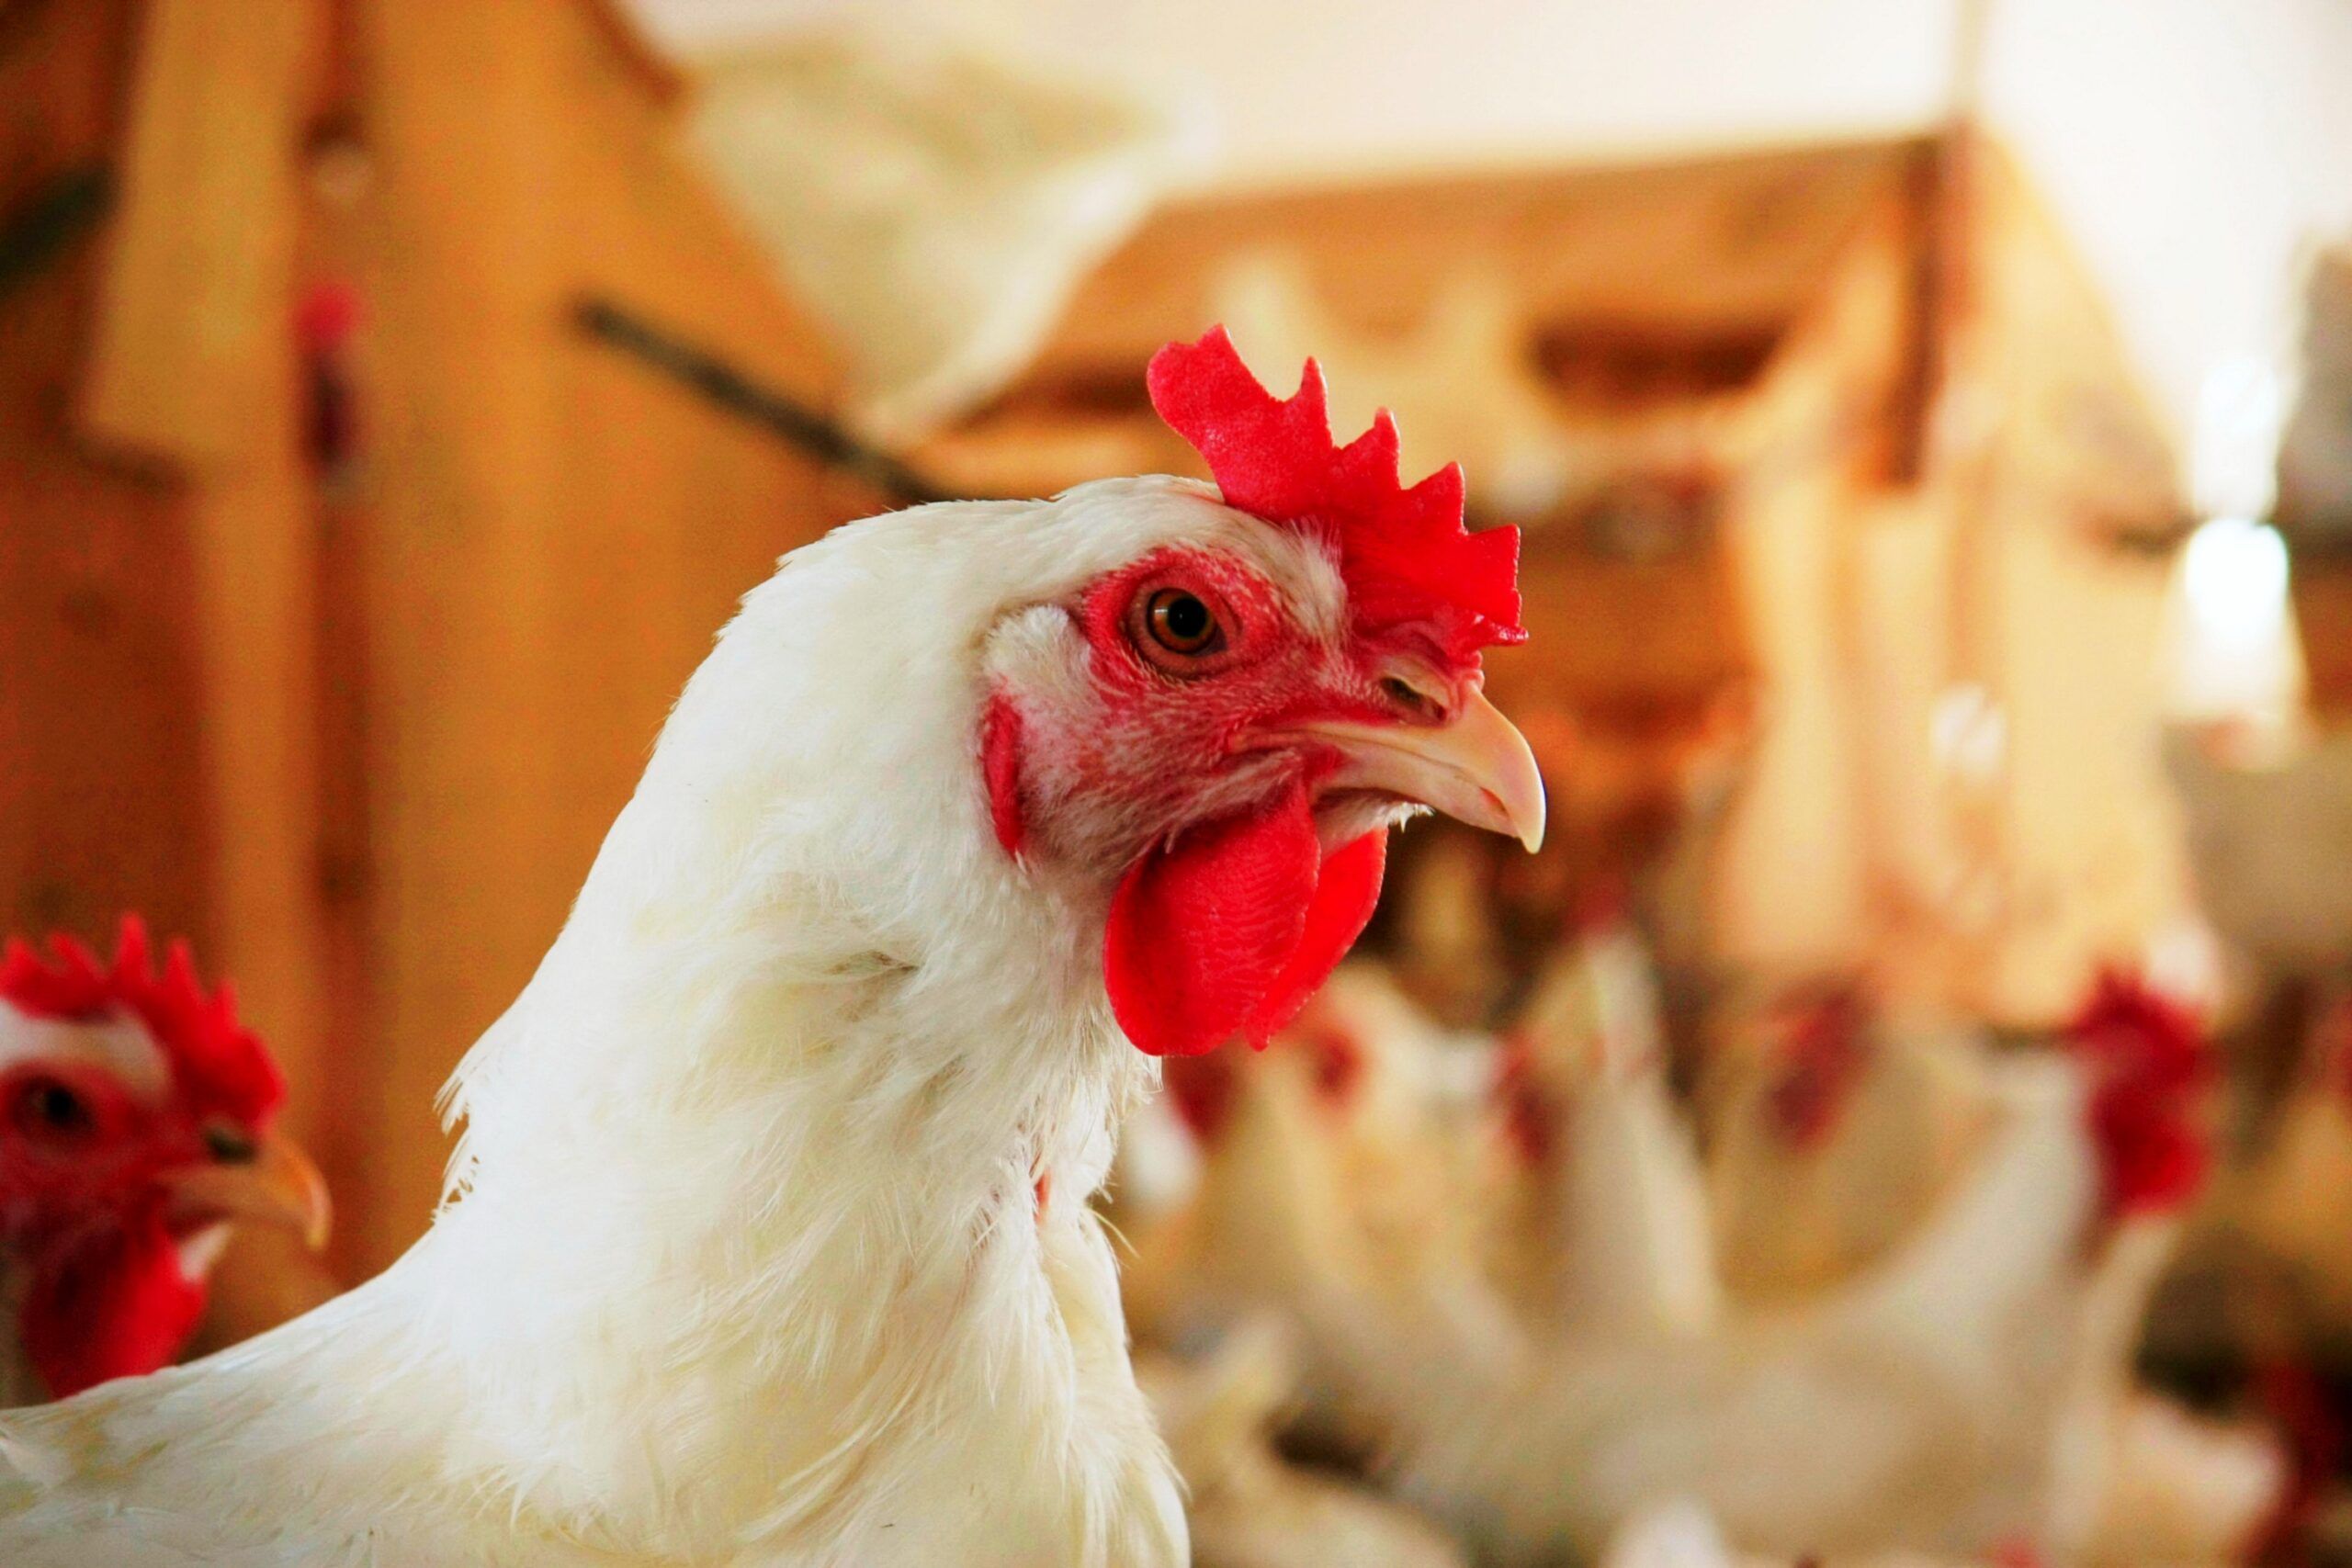 No contexto culinário, o termo frango remete a qualquer prato preparado com a carne de aves como as galinhas